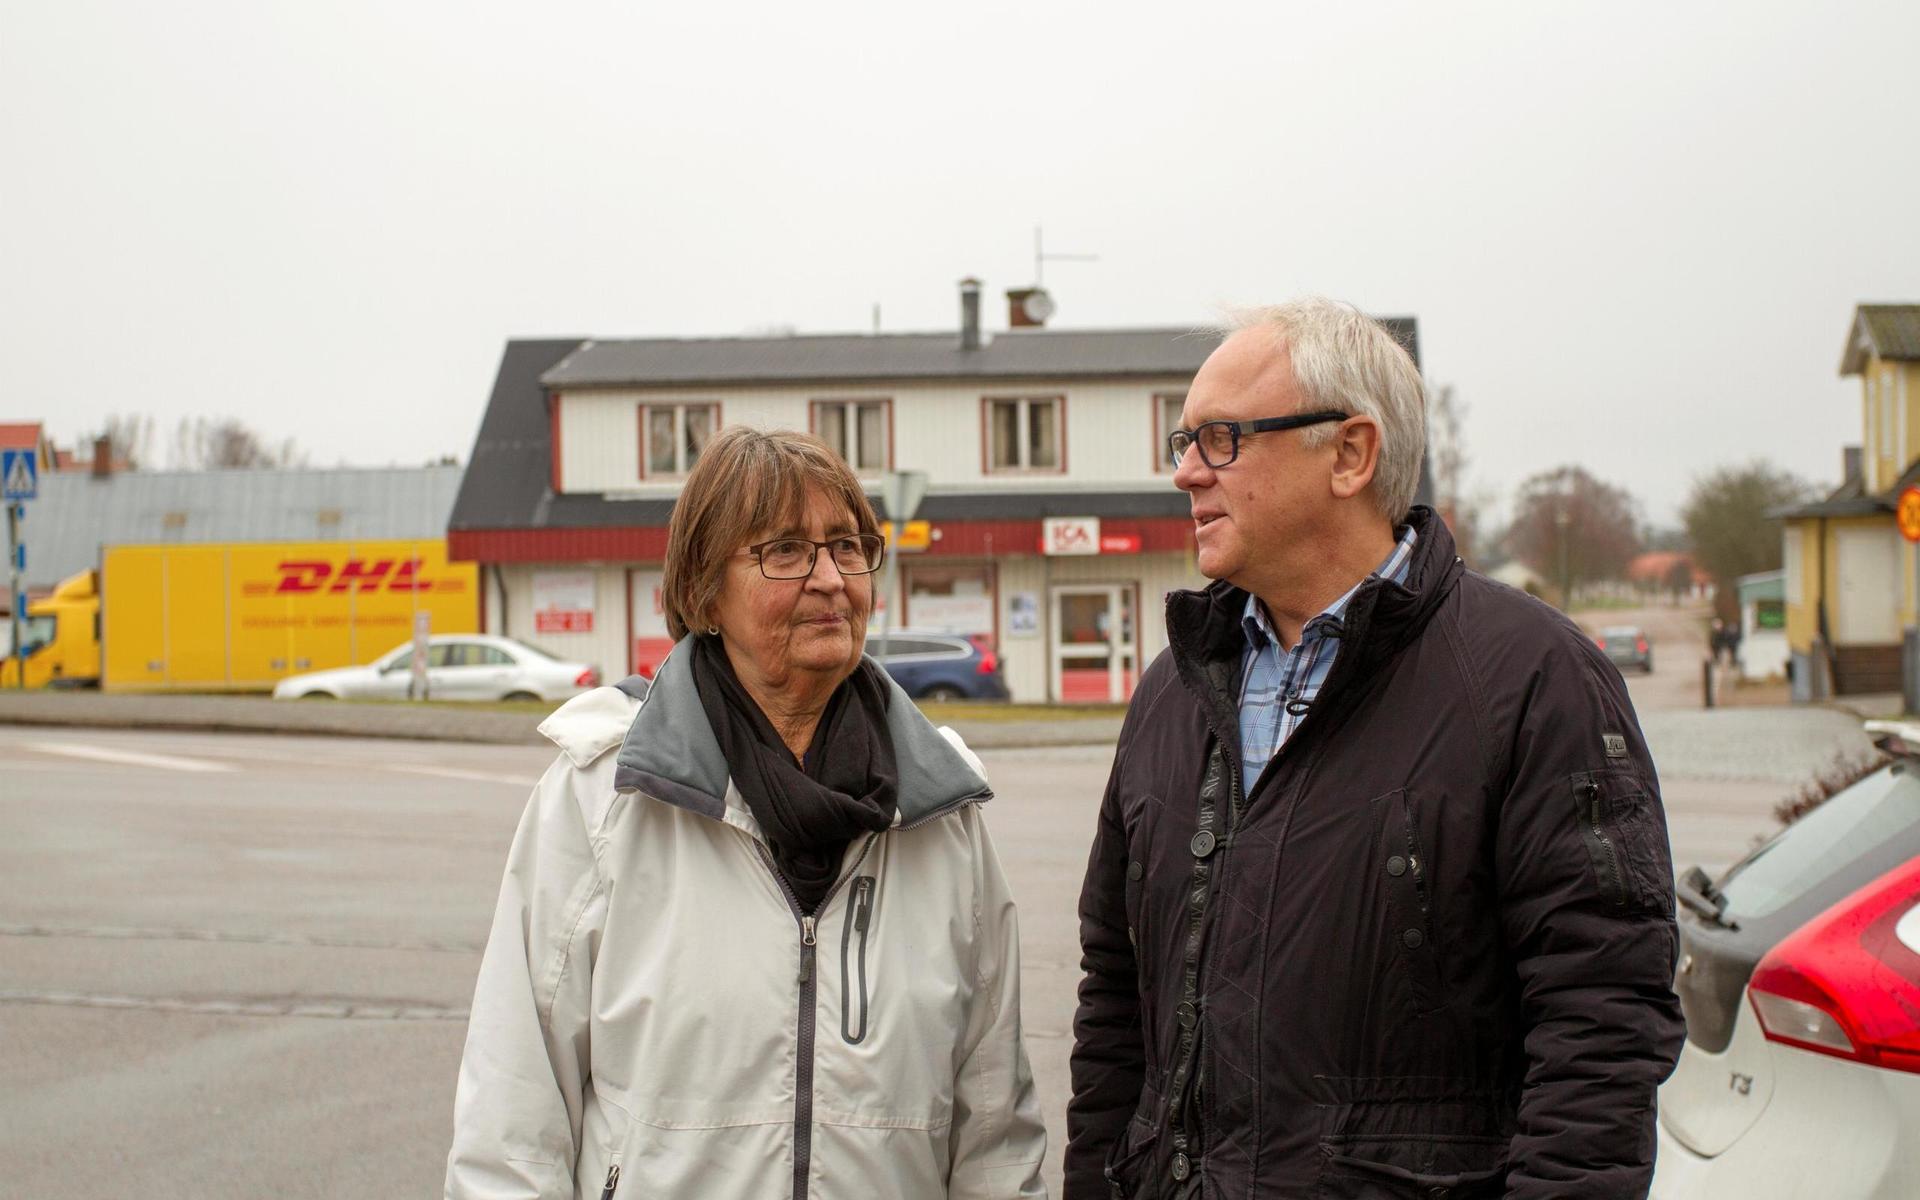 Kommunens landsbygdsutvecklare Reino Jacobsson landsbygdsutvecklare i samspråk med Annika Eriksson, initiativtagare till det nybildade byalaget i Veinge.